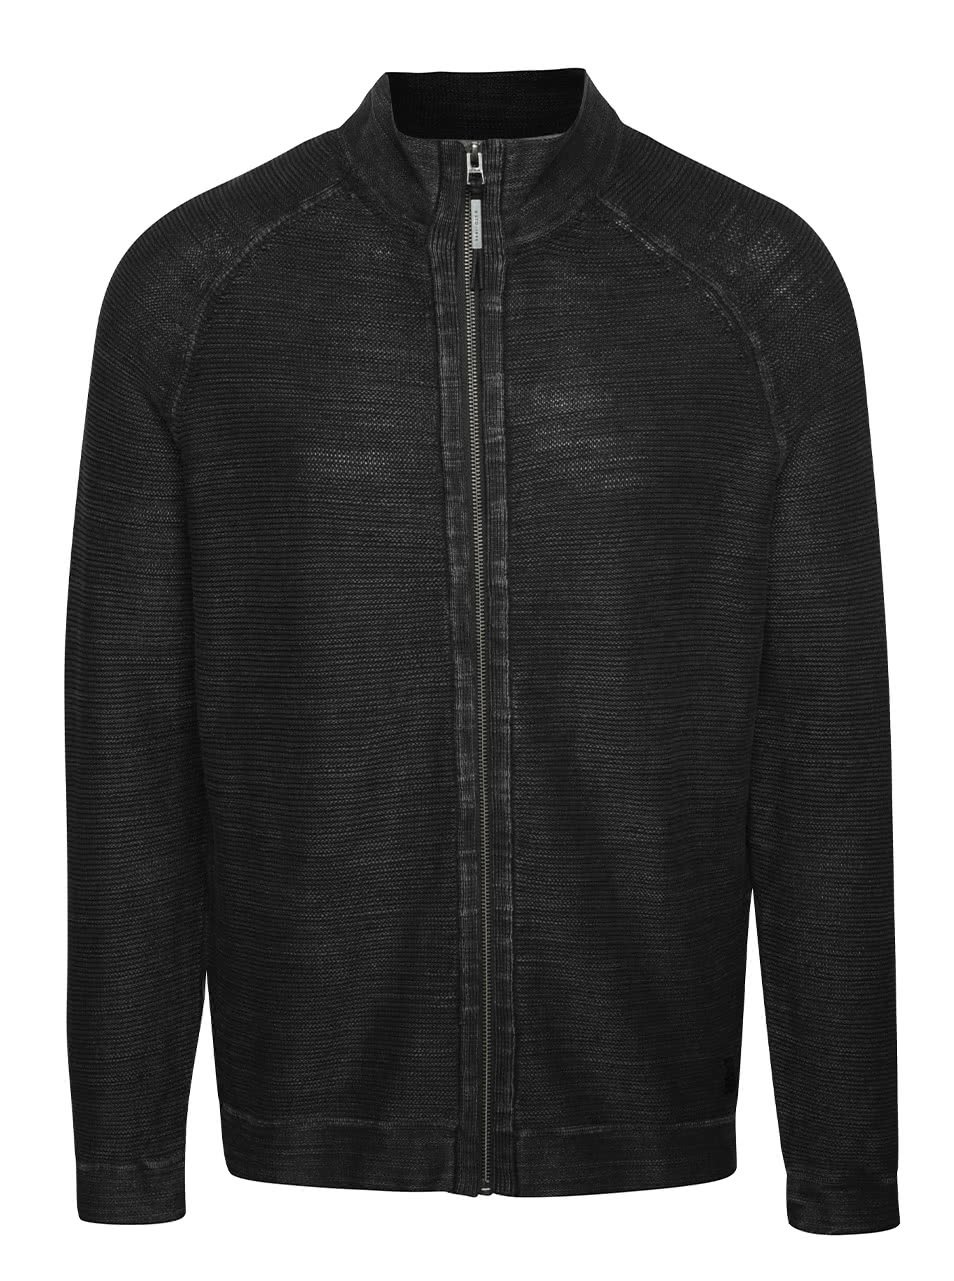 Tmavě šedý pánský žíhaný svetr na zip s.Oliver